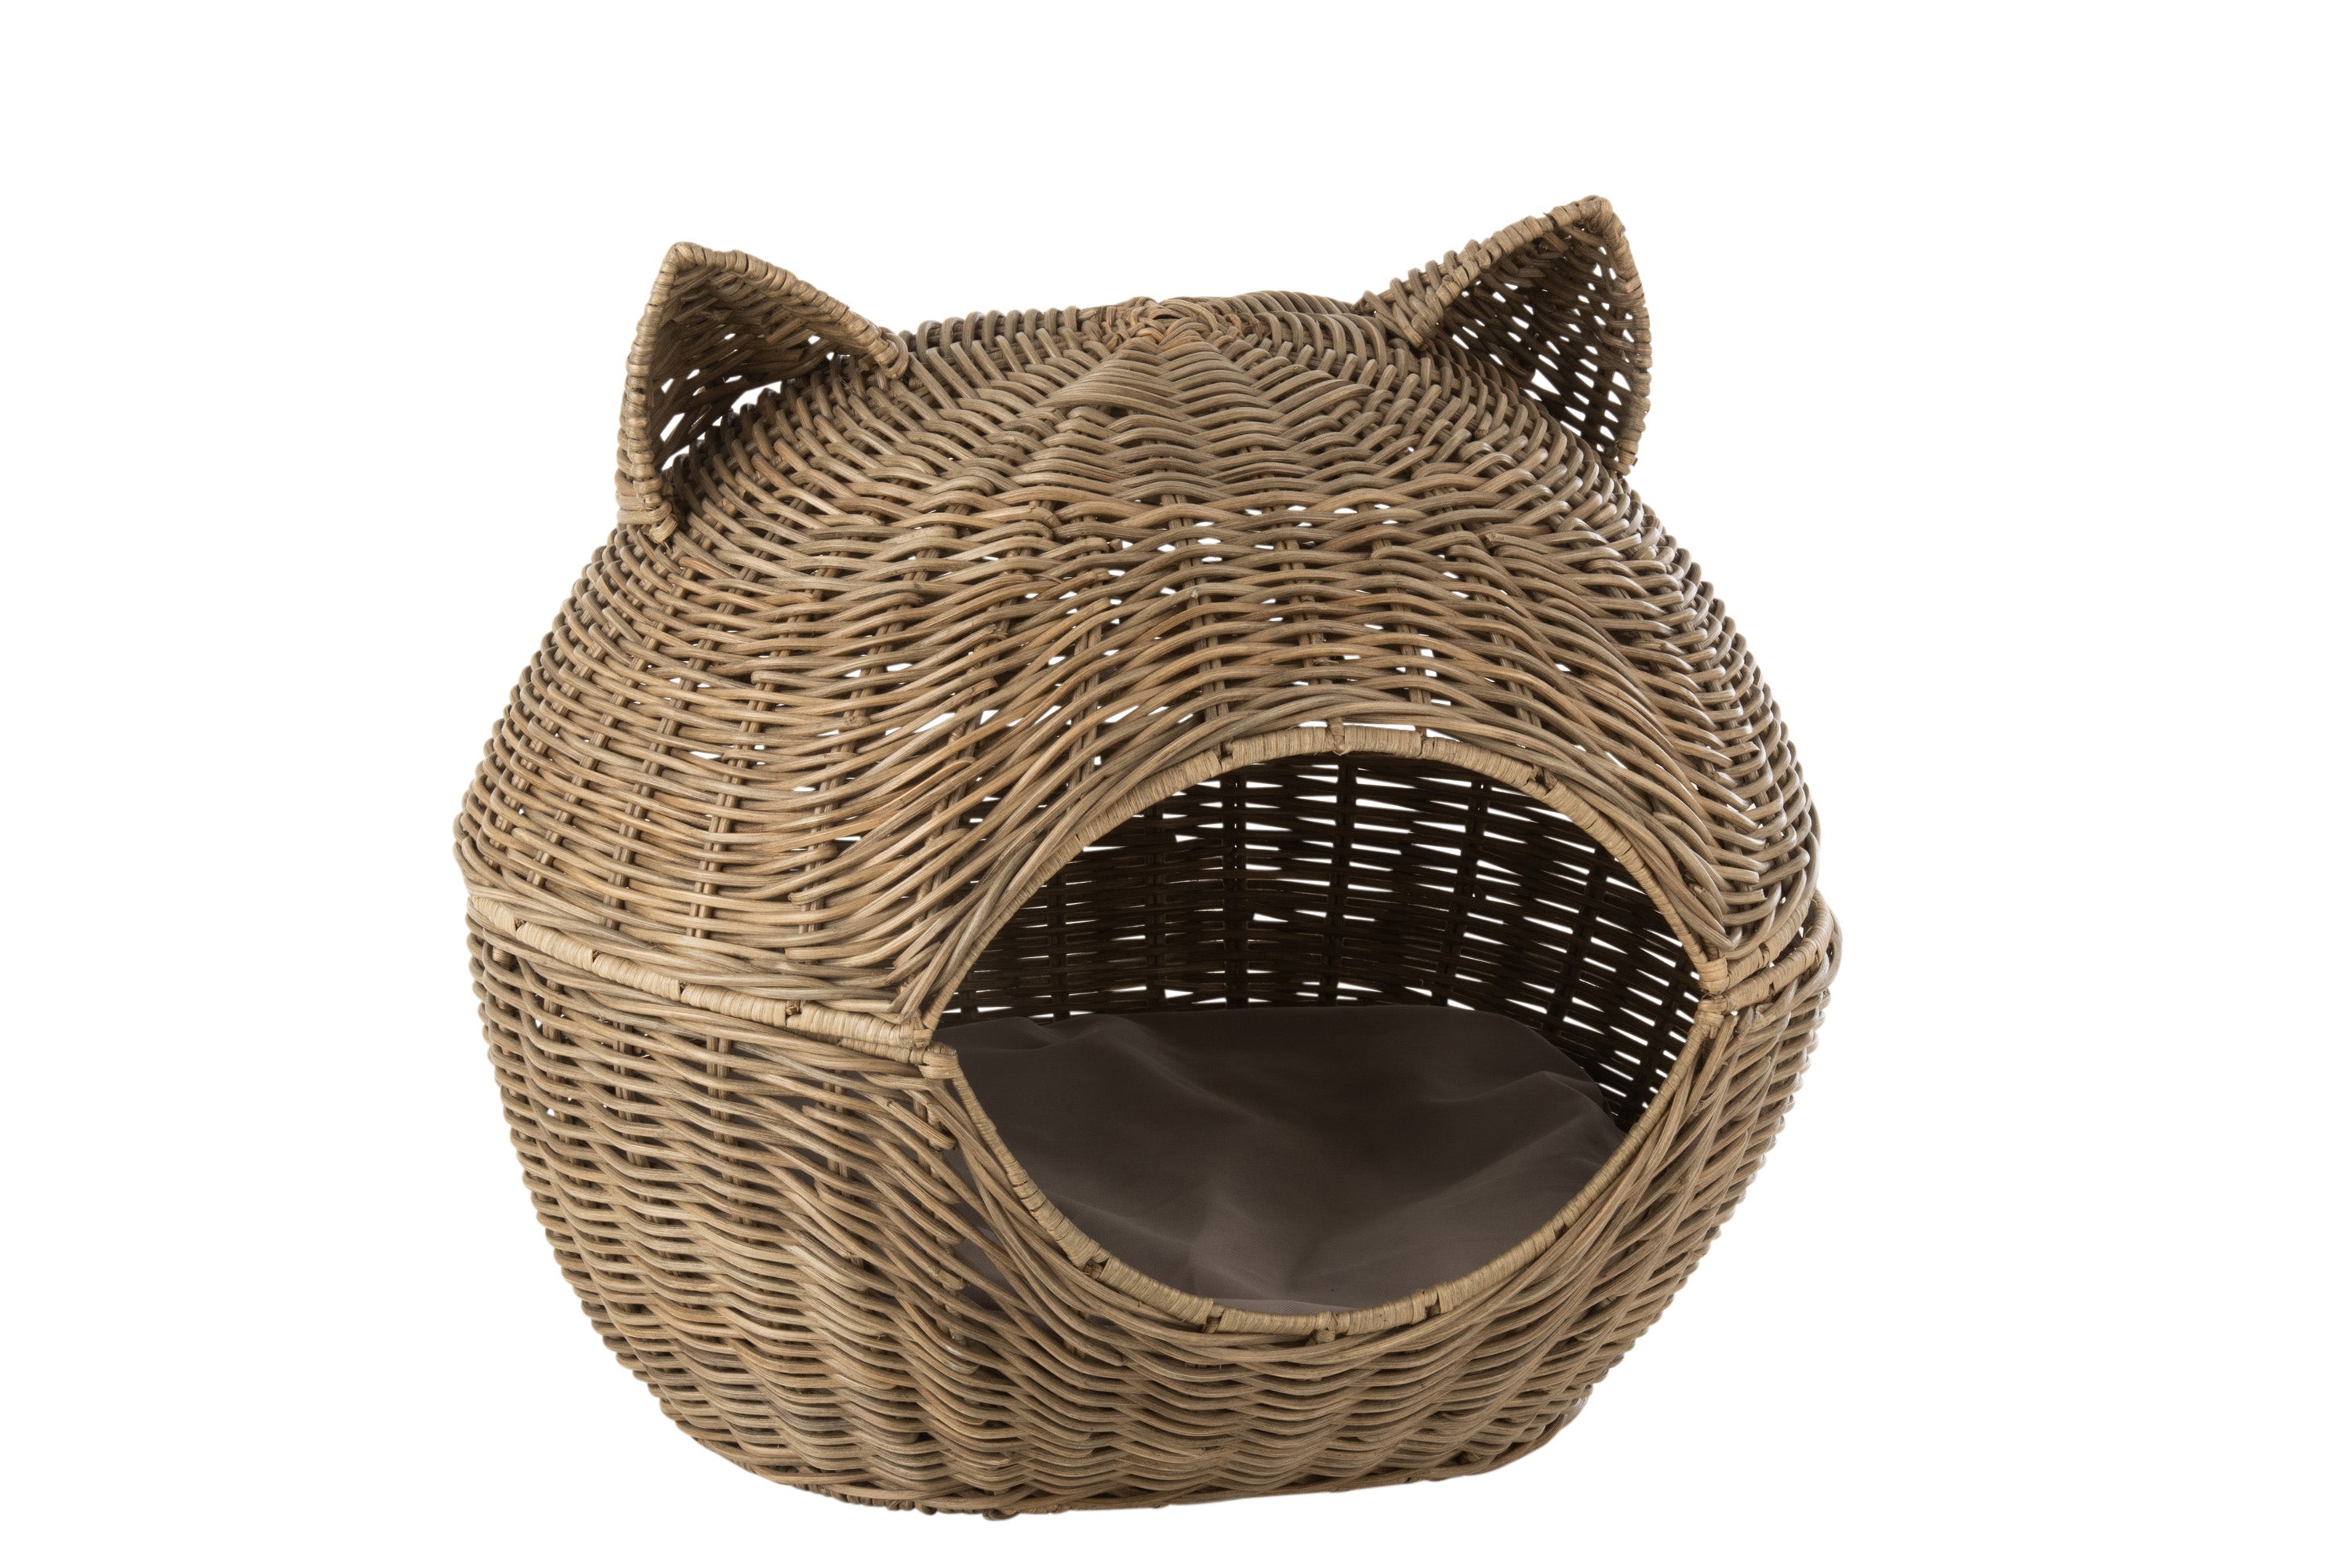 Katzenkorb aus Rattangeflecht; aufklappbare Kugel mit zwei Ohren als stilisierter Katzenkopf mit ovaler Öffnung vorne, innen ein beiges Kissen.f